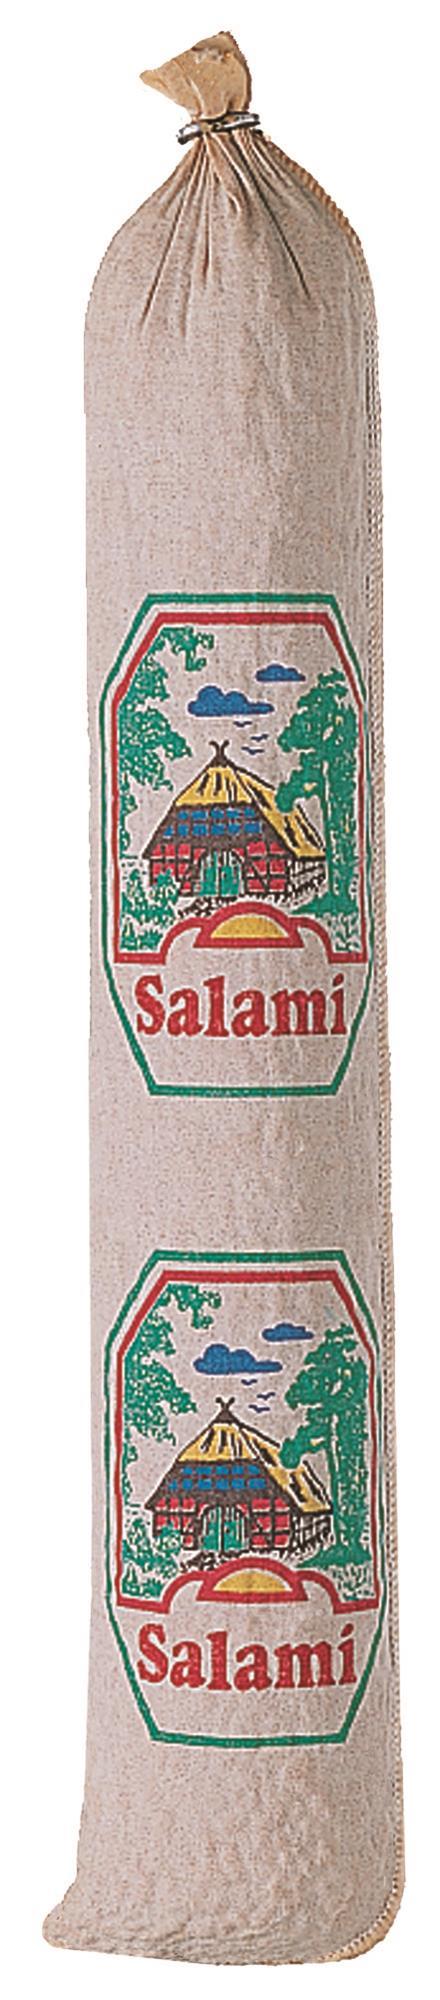 10 Stück Textildarm mit Druck "Salami" 60/40